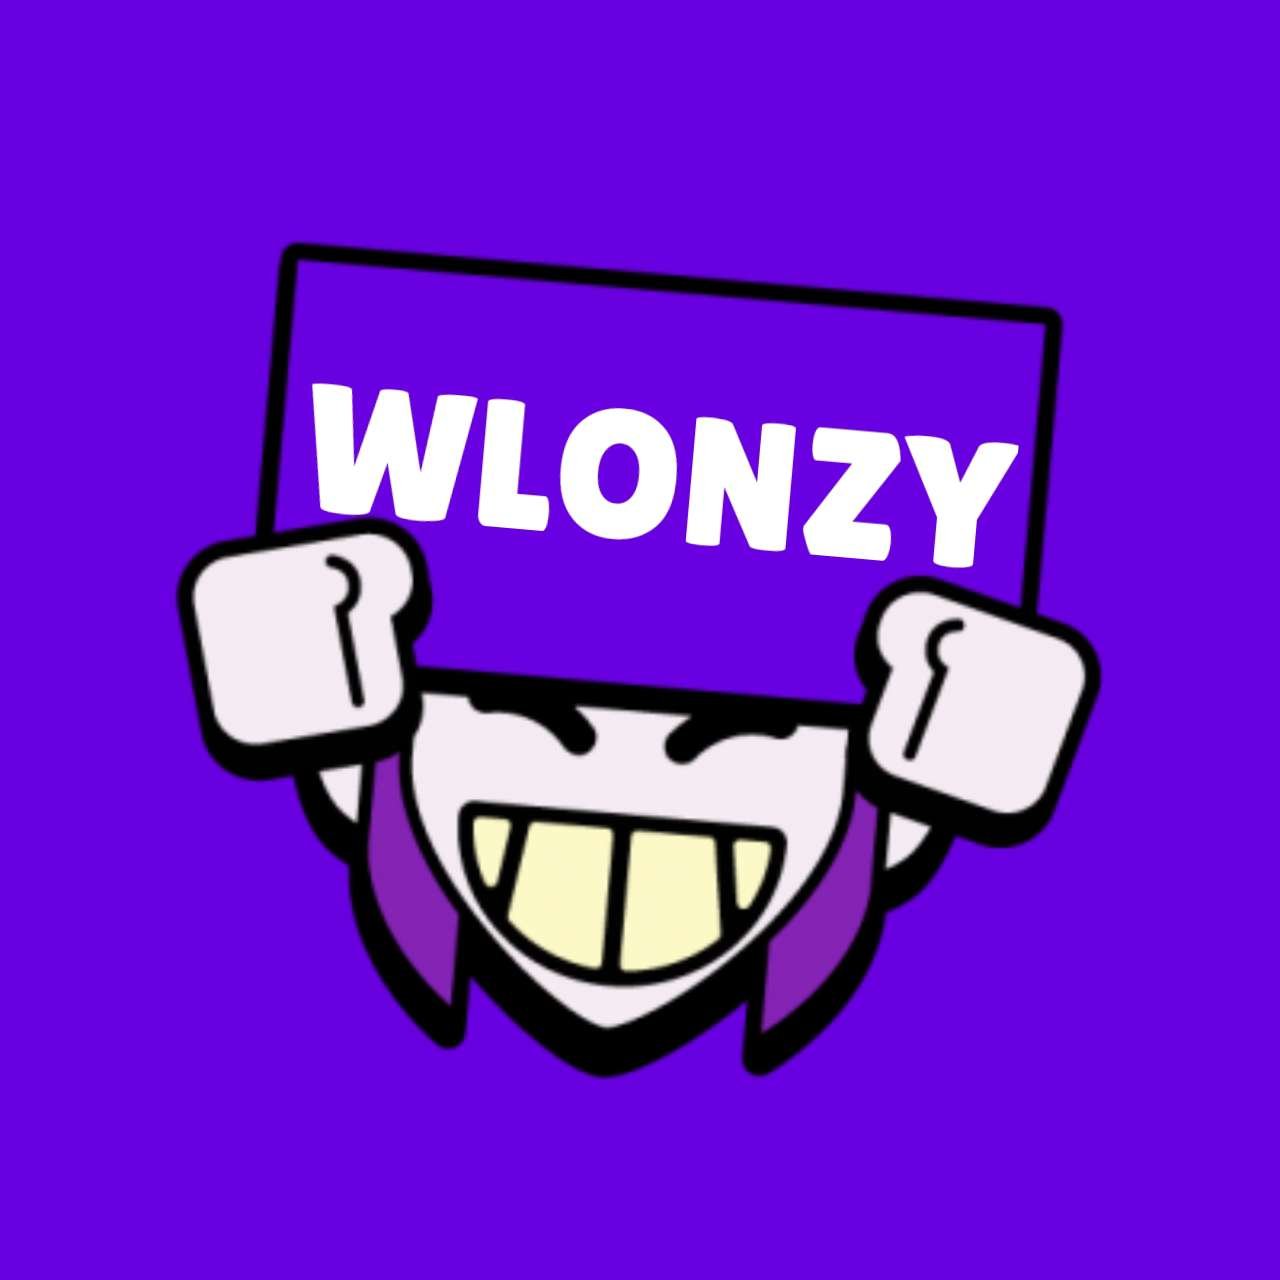 WlonzyShop